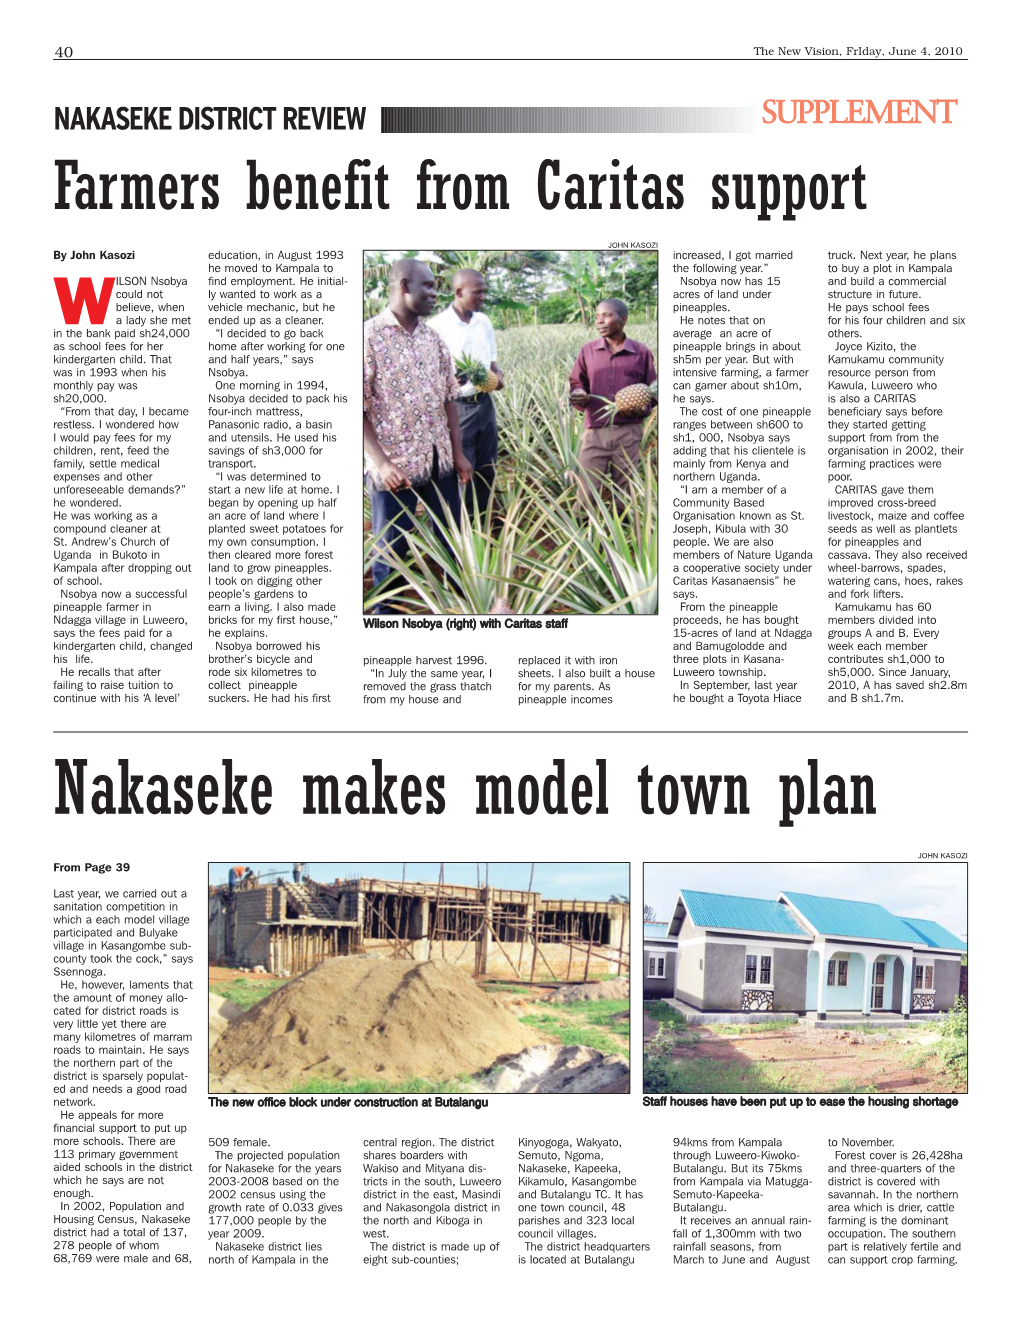 Nakaseke Makes Model Town Plan